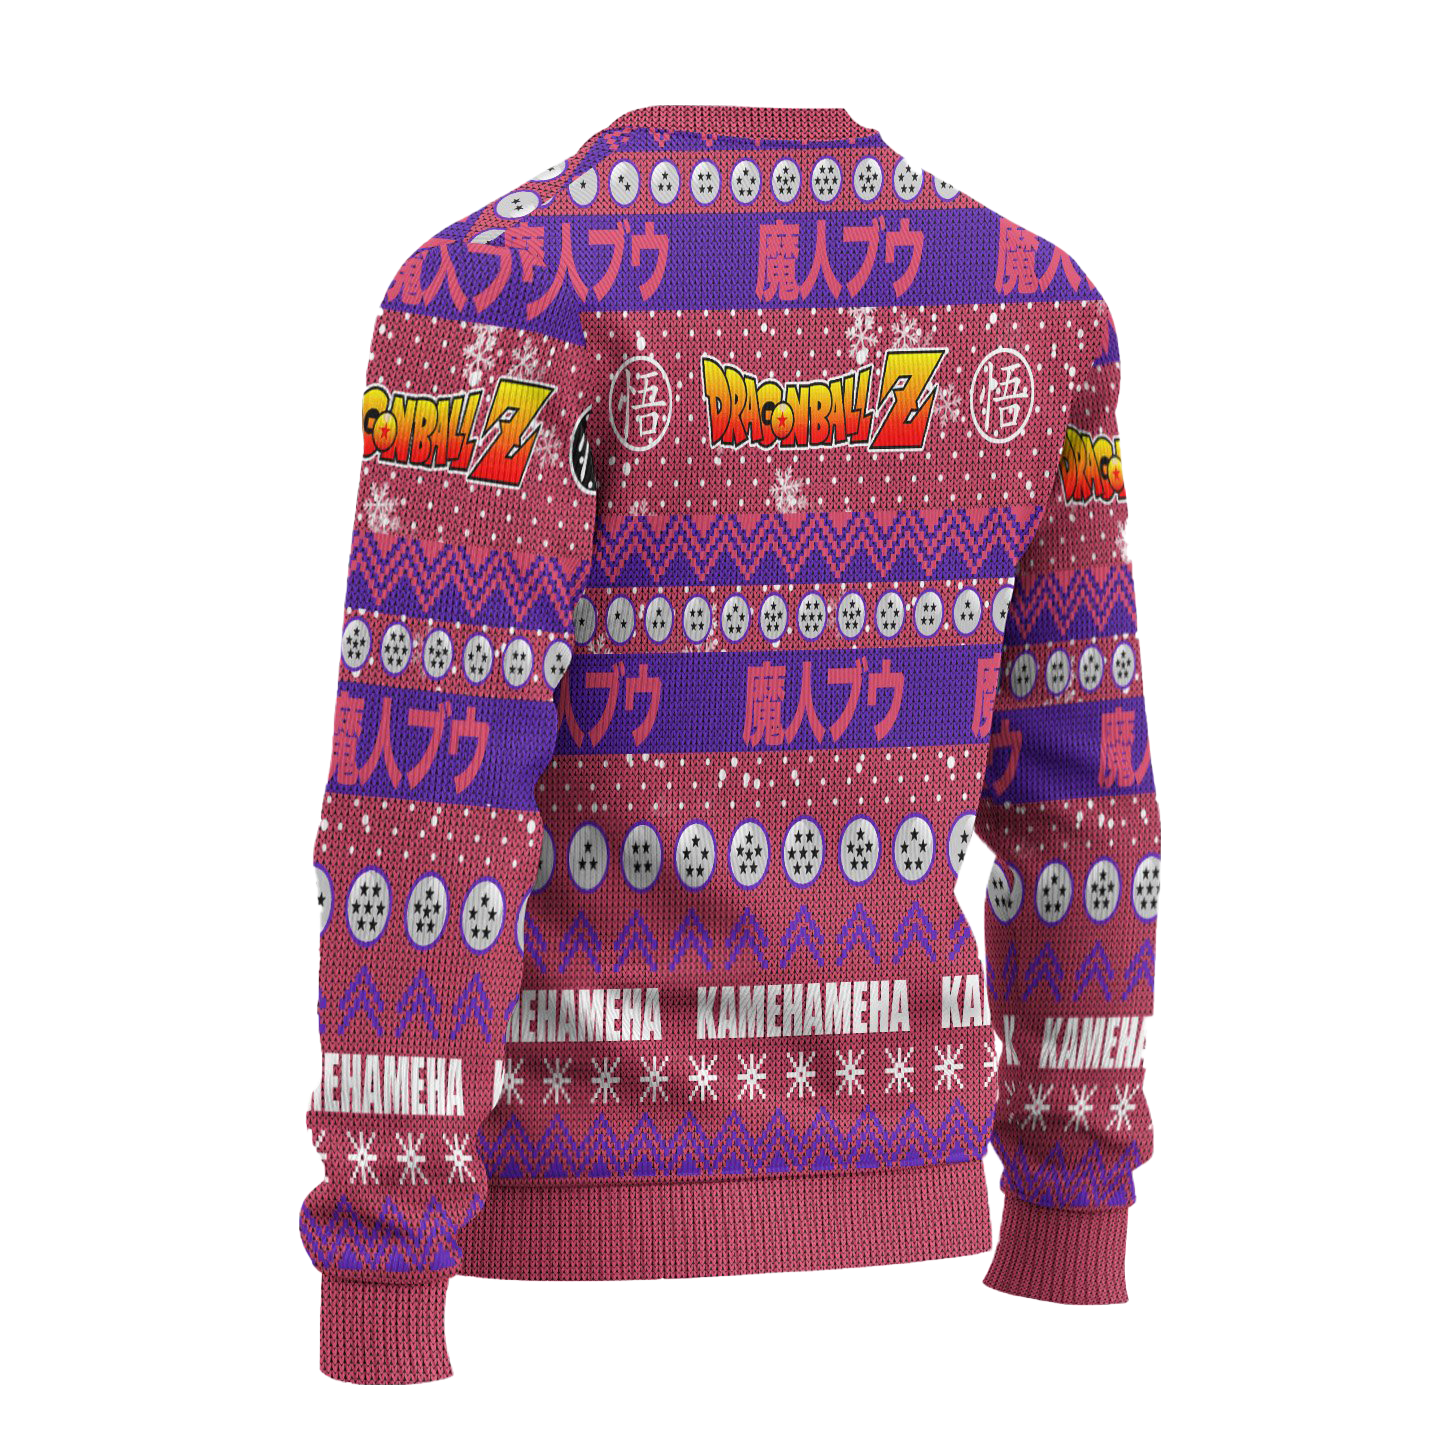 Majin Buu Anime Ugly Christmas Sweater Dragon Ball Z Xmas Gift